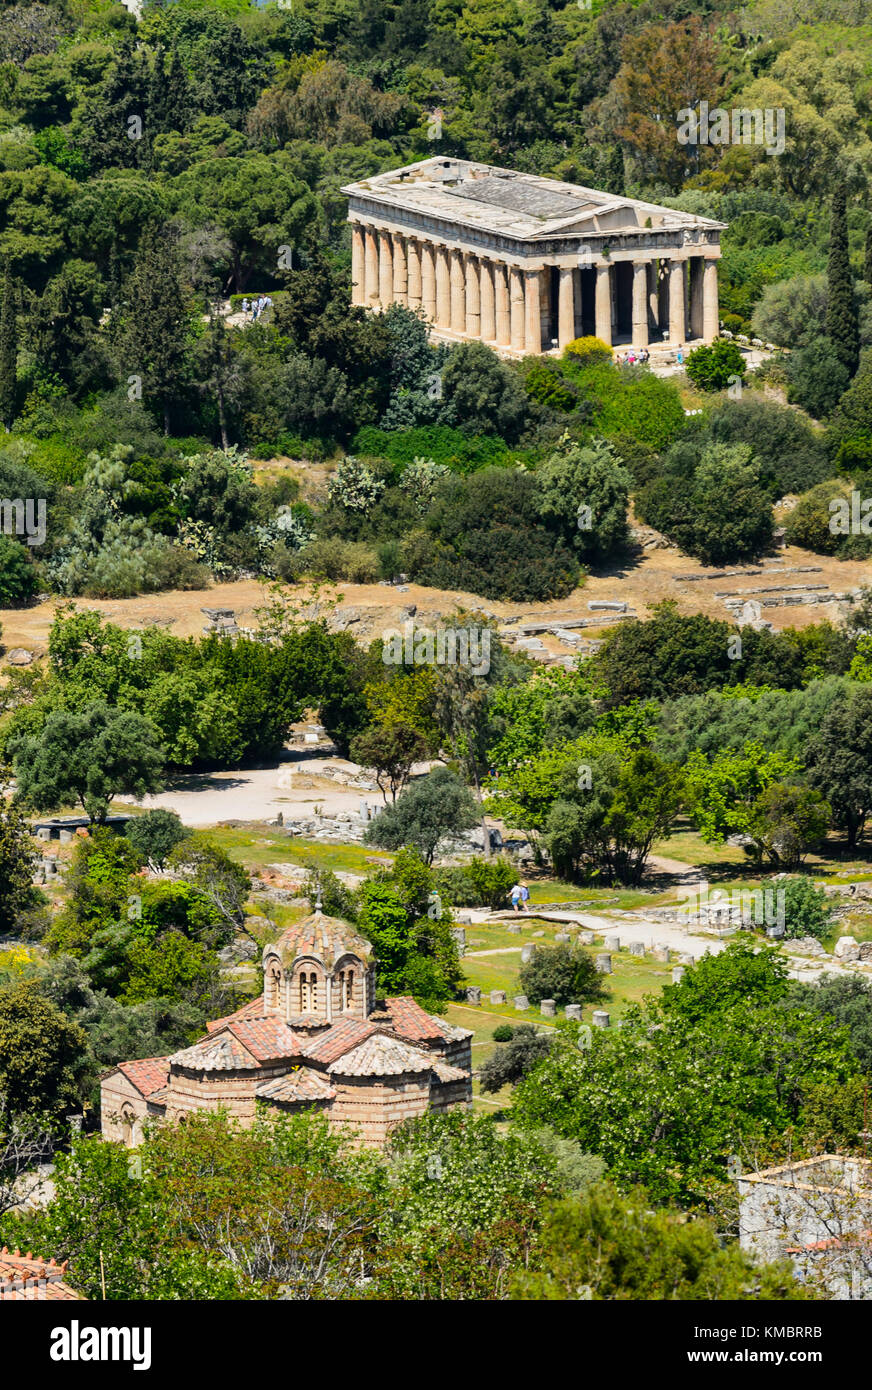 La iglesia bizantina de los Santos Apóstoles y el Templo de Hefesto en Atenas, Grecia Foto de stock